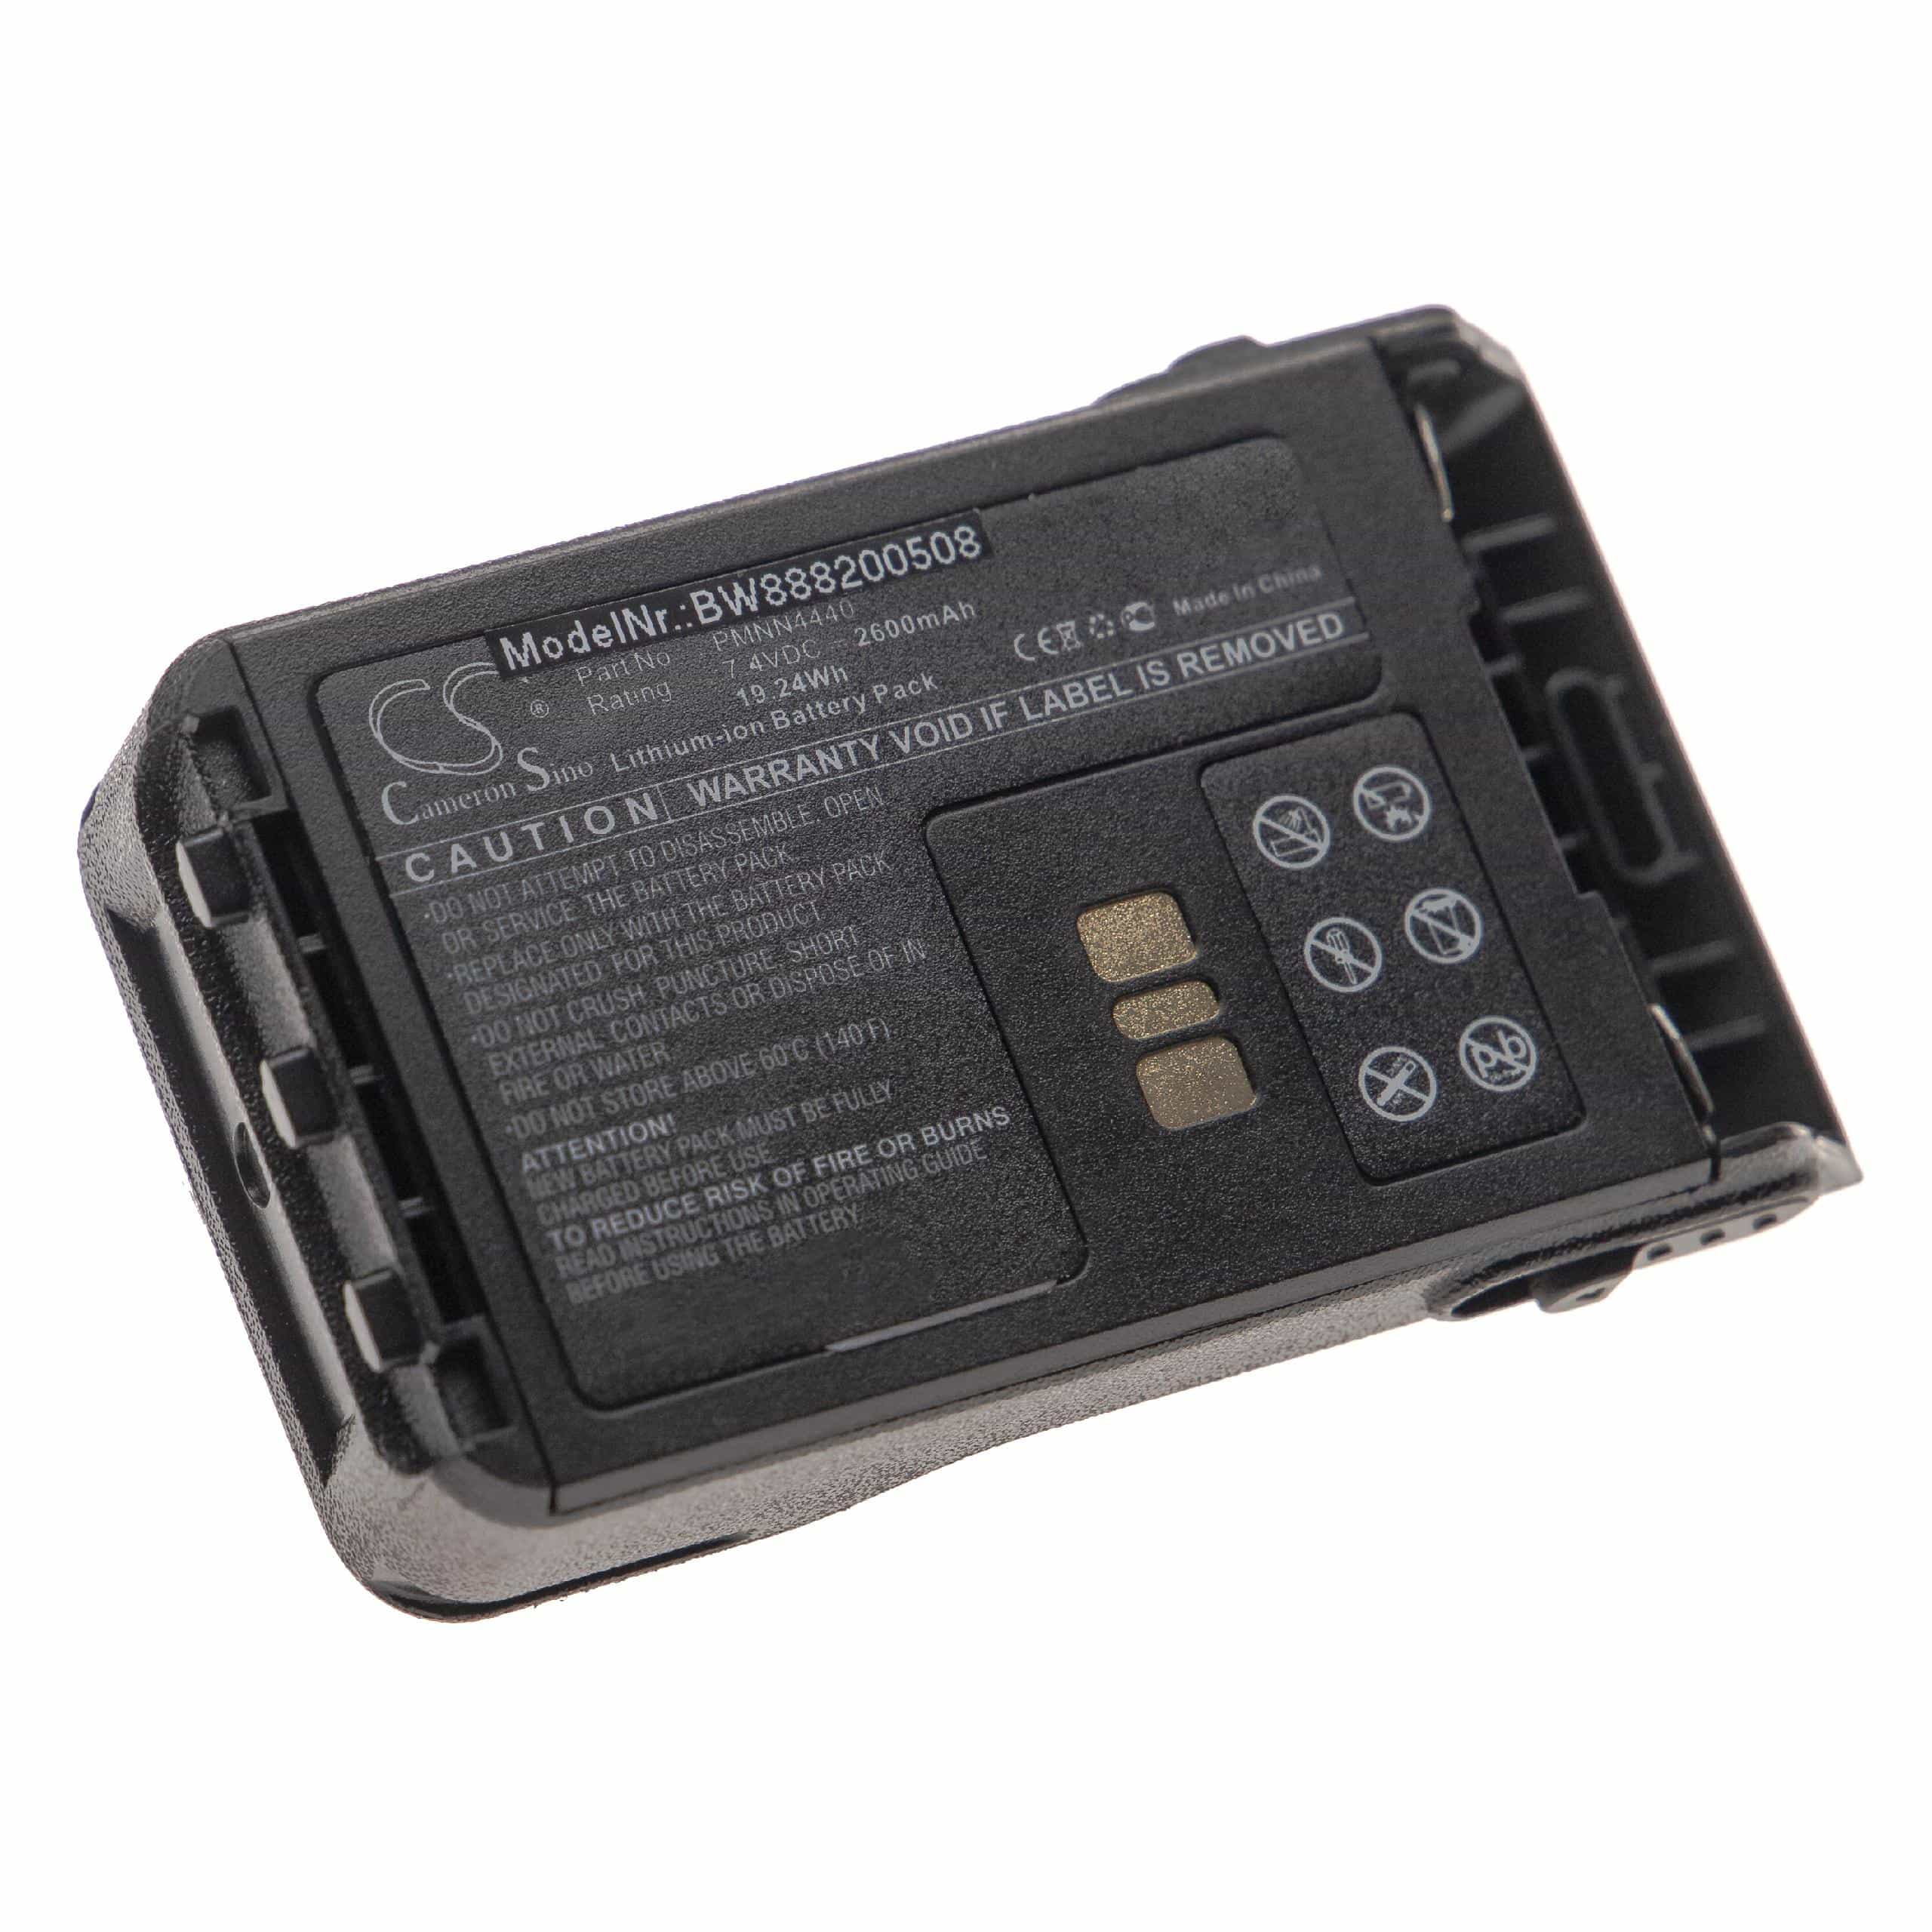 Batería reemplaza Motorola PMNN4440, PMNN4440AR para radio, walkie-talkie Motorola - 2600 mAh 7,4 V Li-Ion